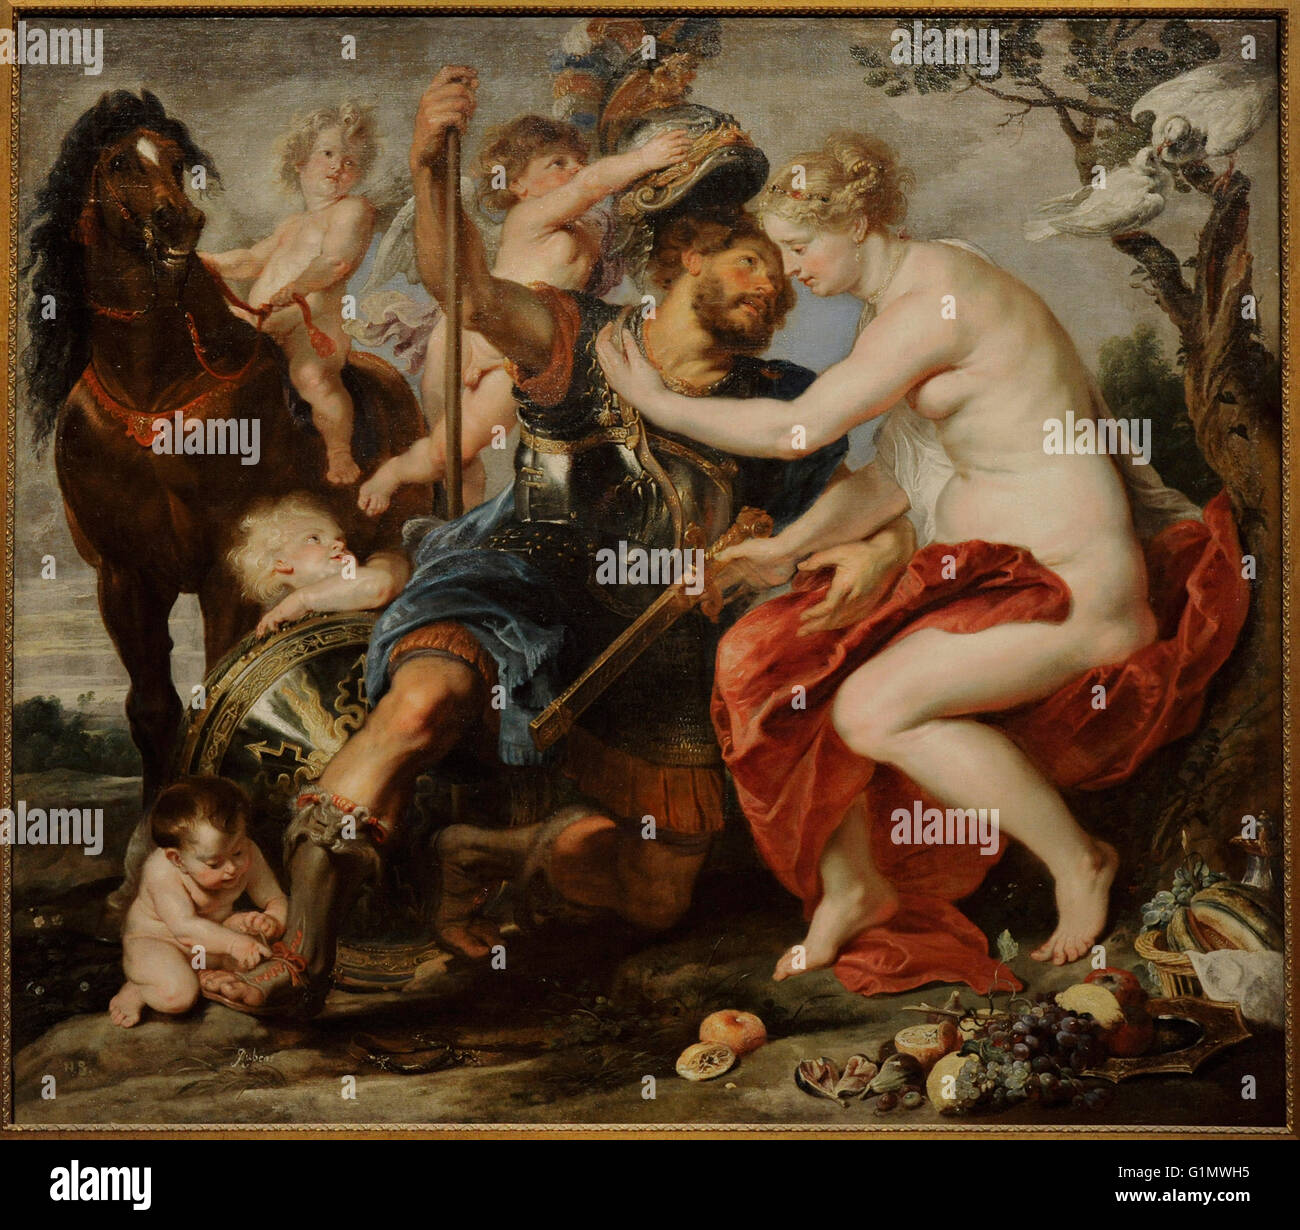 Peter Paul Rubens (1577-1640). Peintre baroque flamand. Mars et Vénus, 1615-1620. Huile sur toile. Le Musée de l'Ermitage. Saint Petersburg. La Russie. Banque D'Images